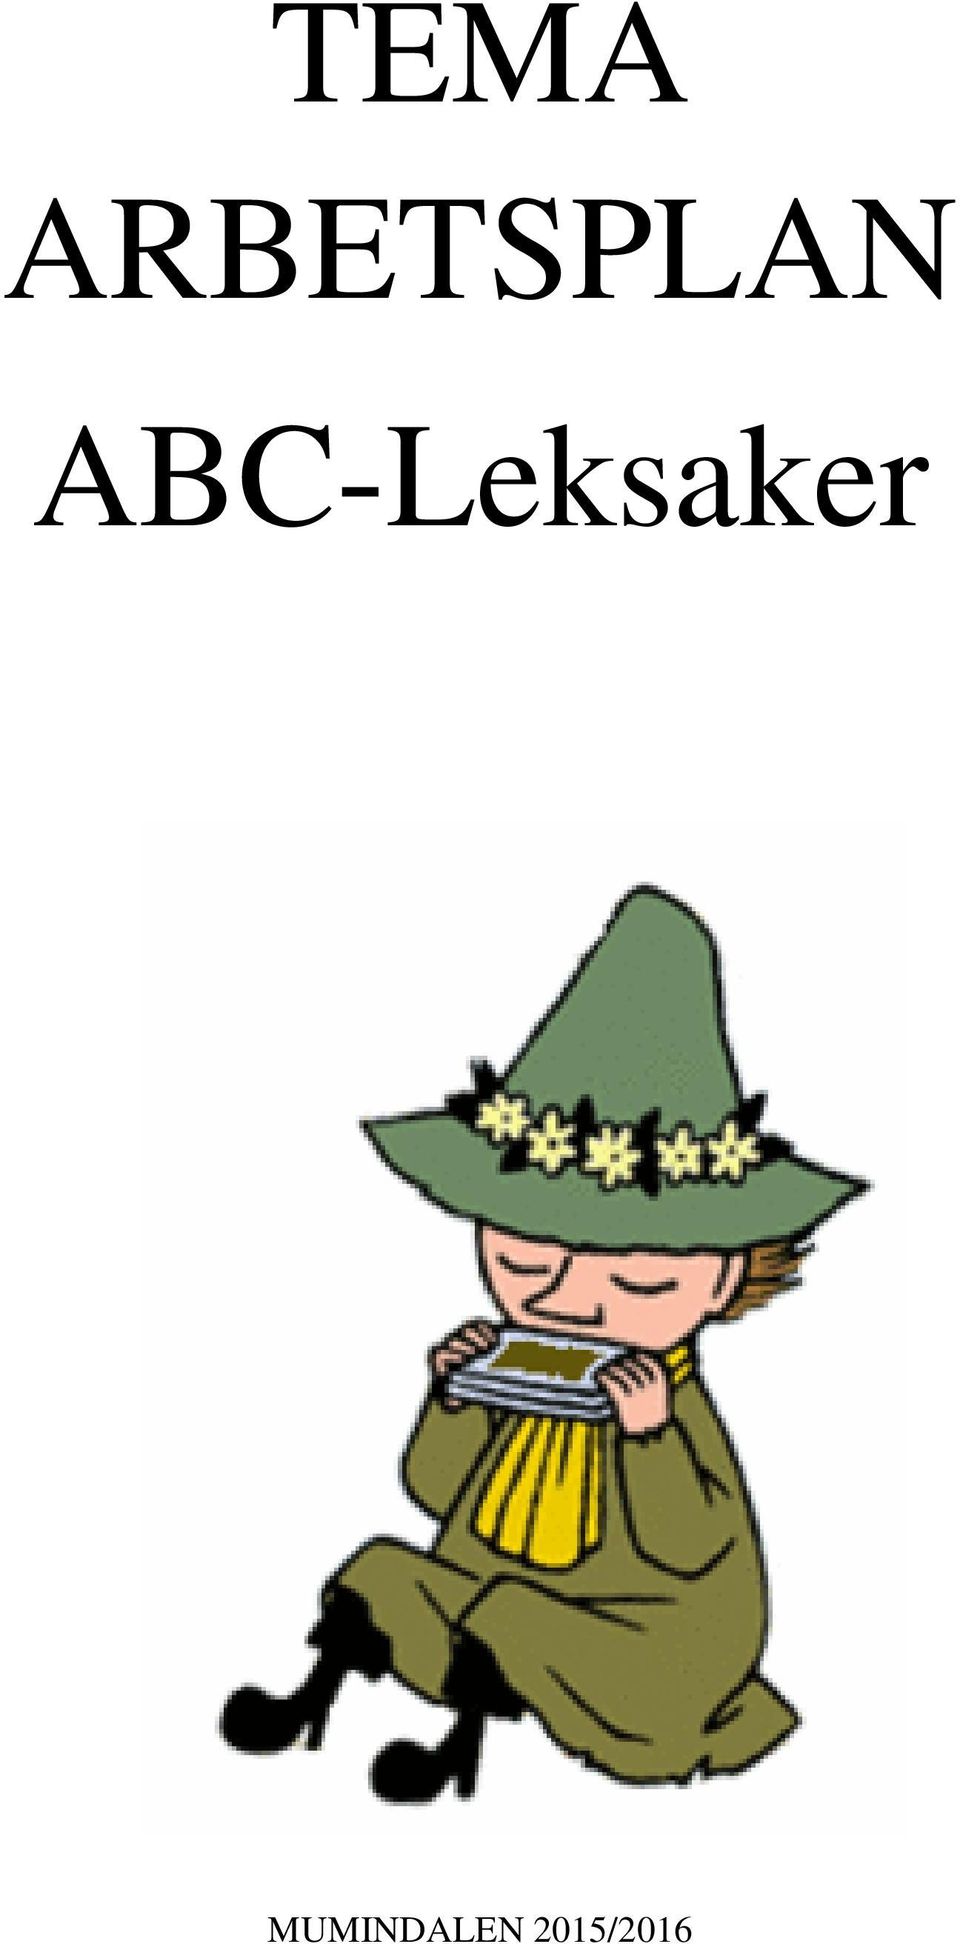 ABC-Leksaker